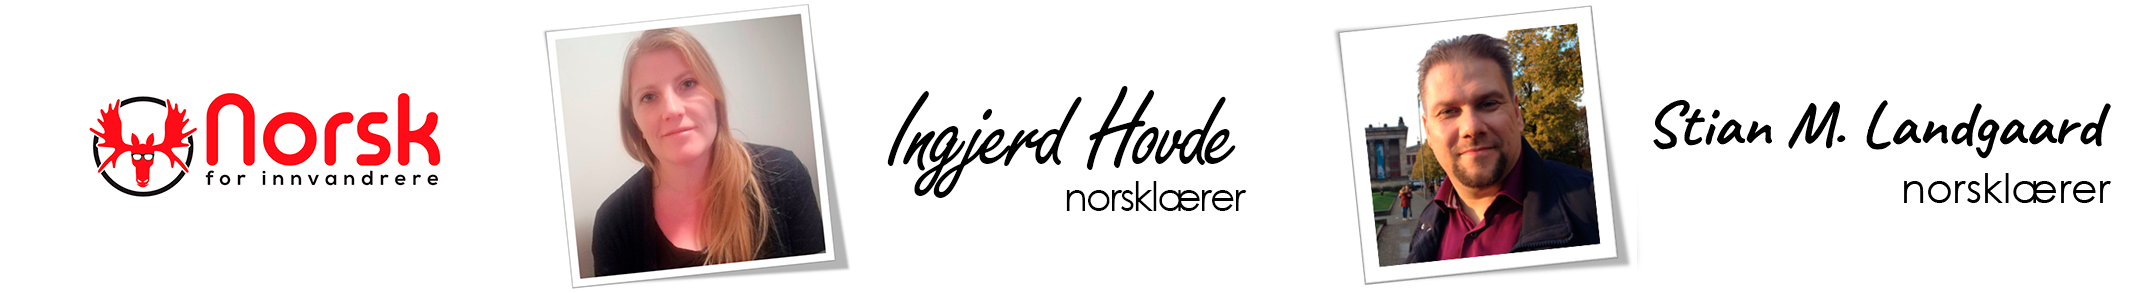 NFI- Ingjerd og Stian sammen 2019 med logo on left side.png